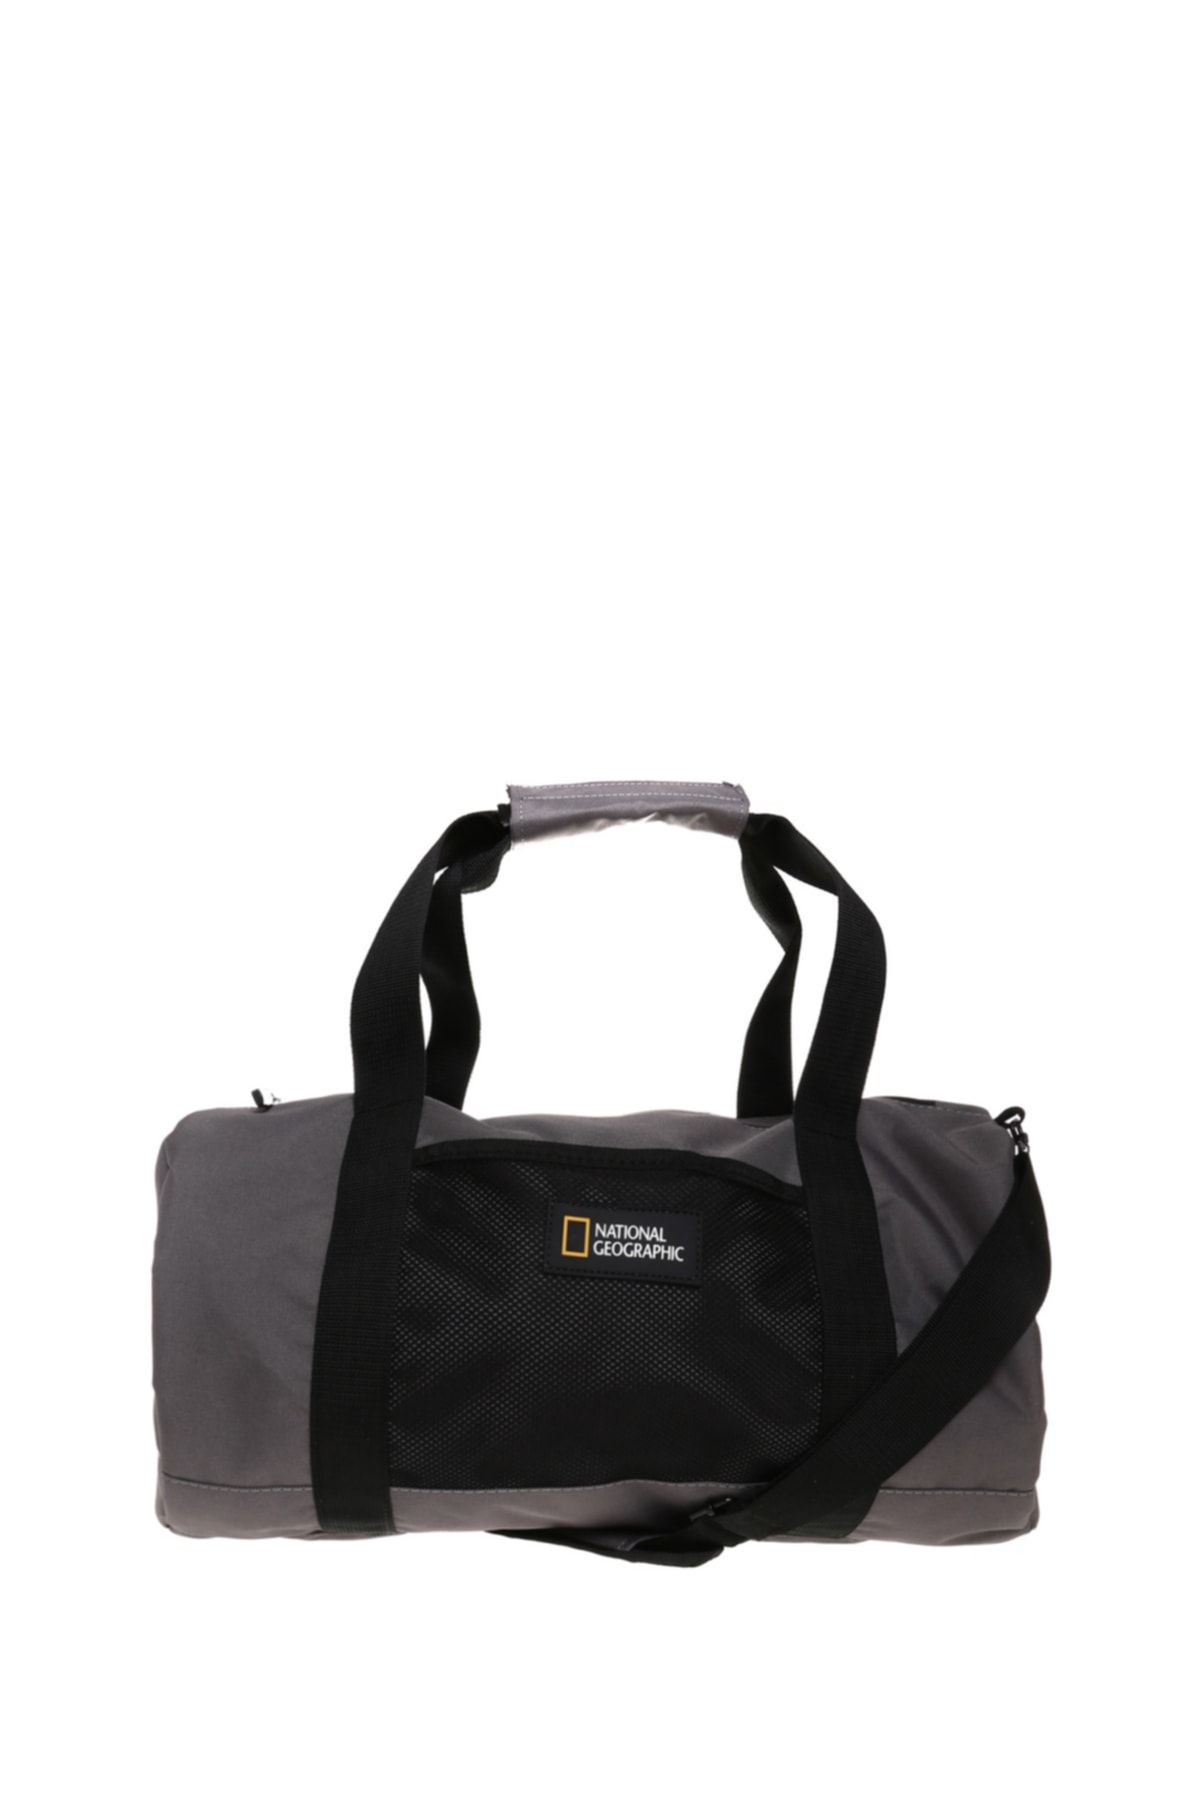 National Geographic Duffle Bag Fiyatı, Yorumları - Trendyol